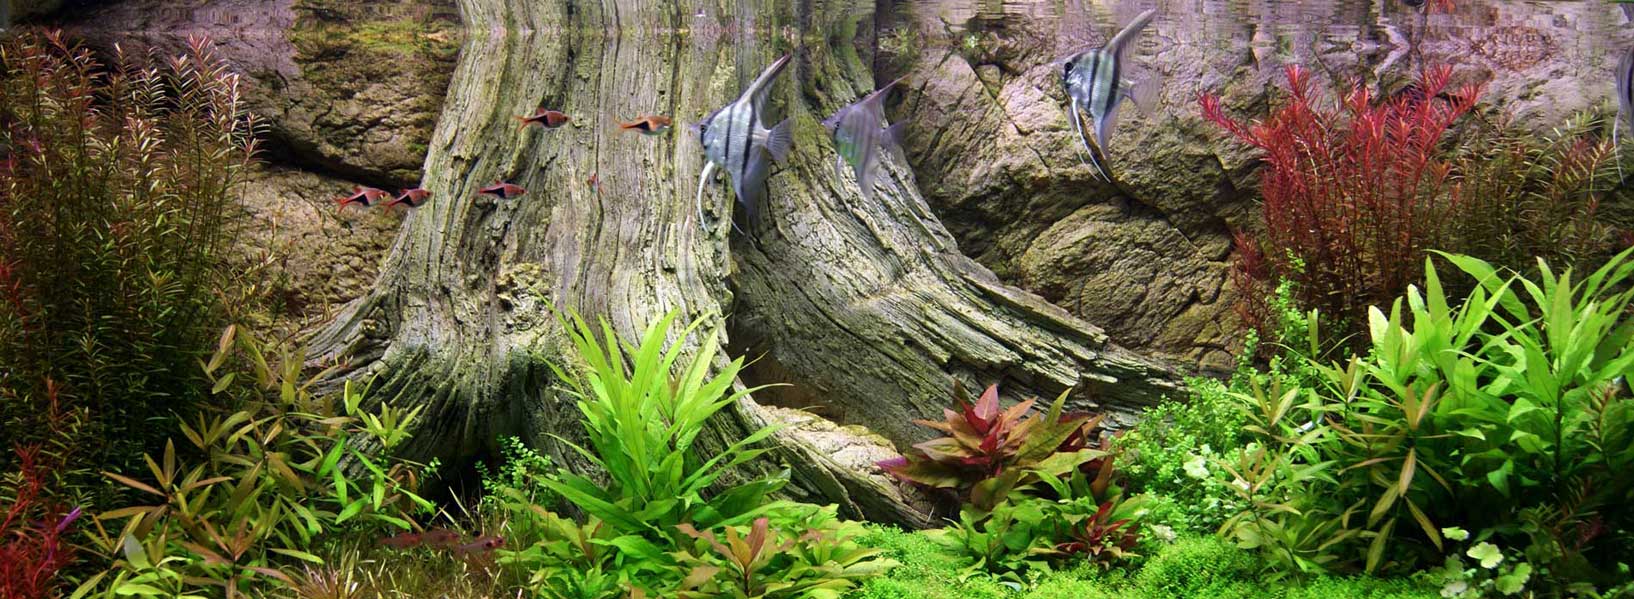 Amazonas background in the aquarium tank